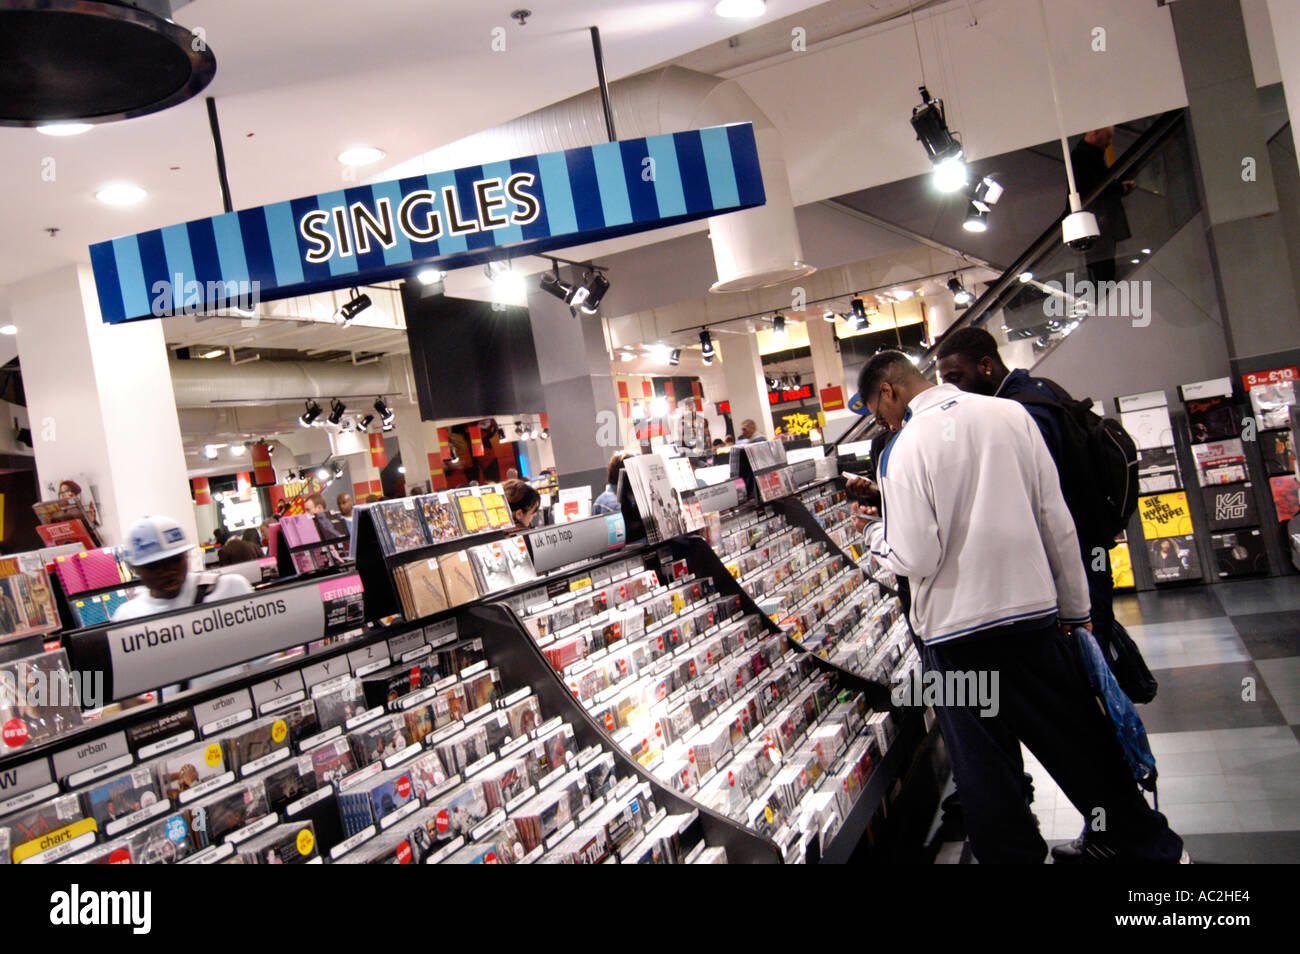 Les jeunes consommateurs en parcourant des célibataires CDs à HMV store London England UK Banque D'Images